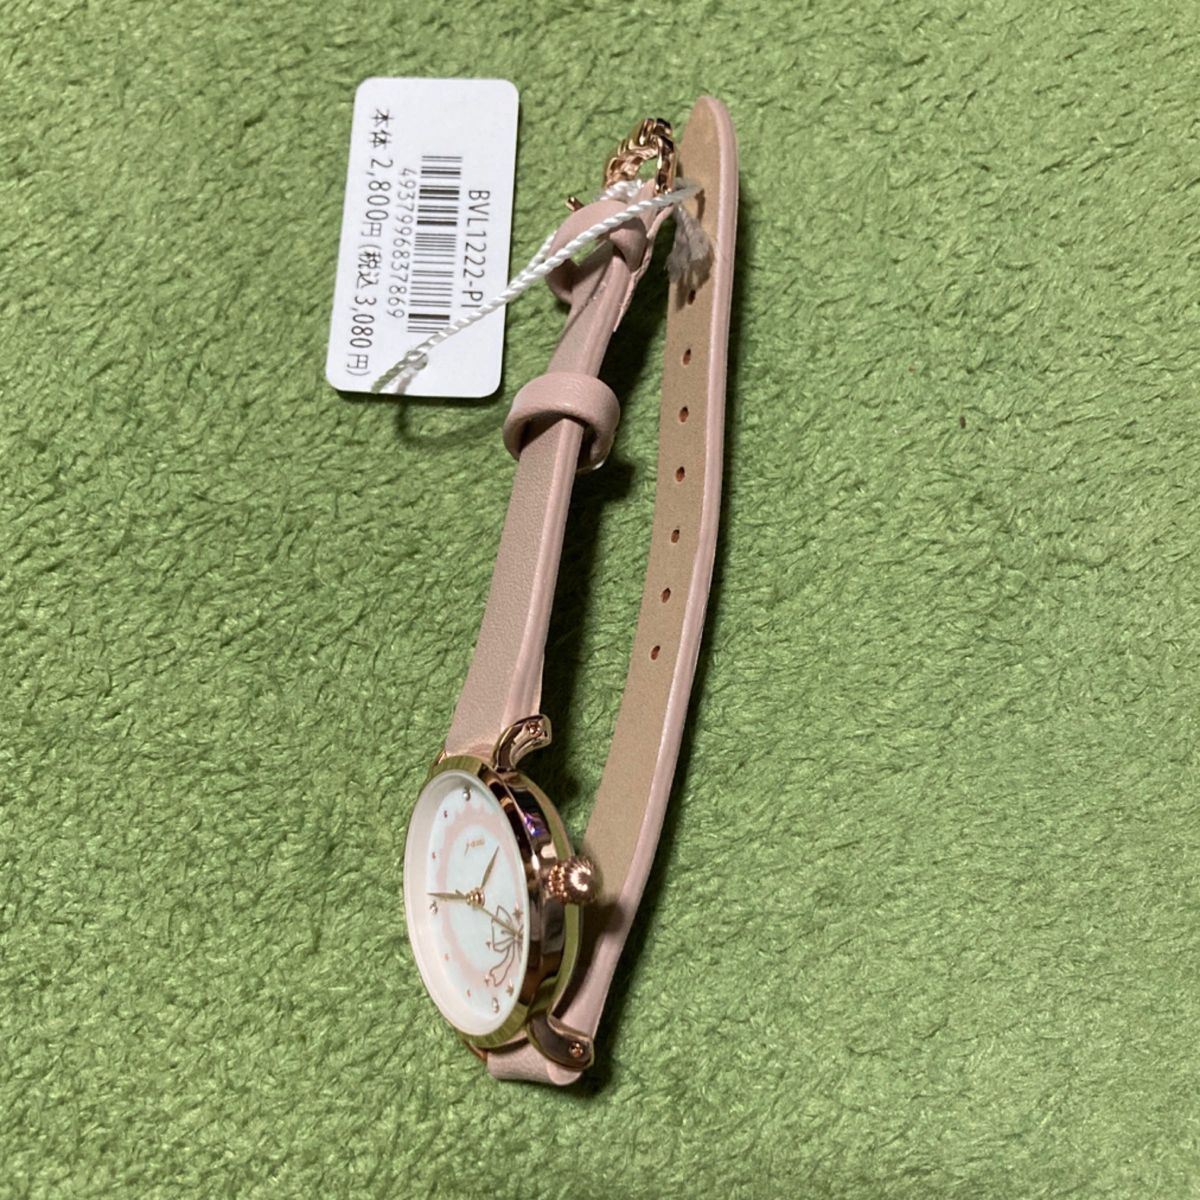 [(株) サンフレイム] 腕時計 J-アクシス BVL1222 レディース ピンク